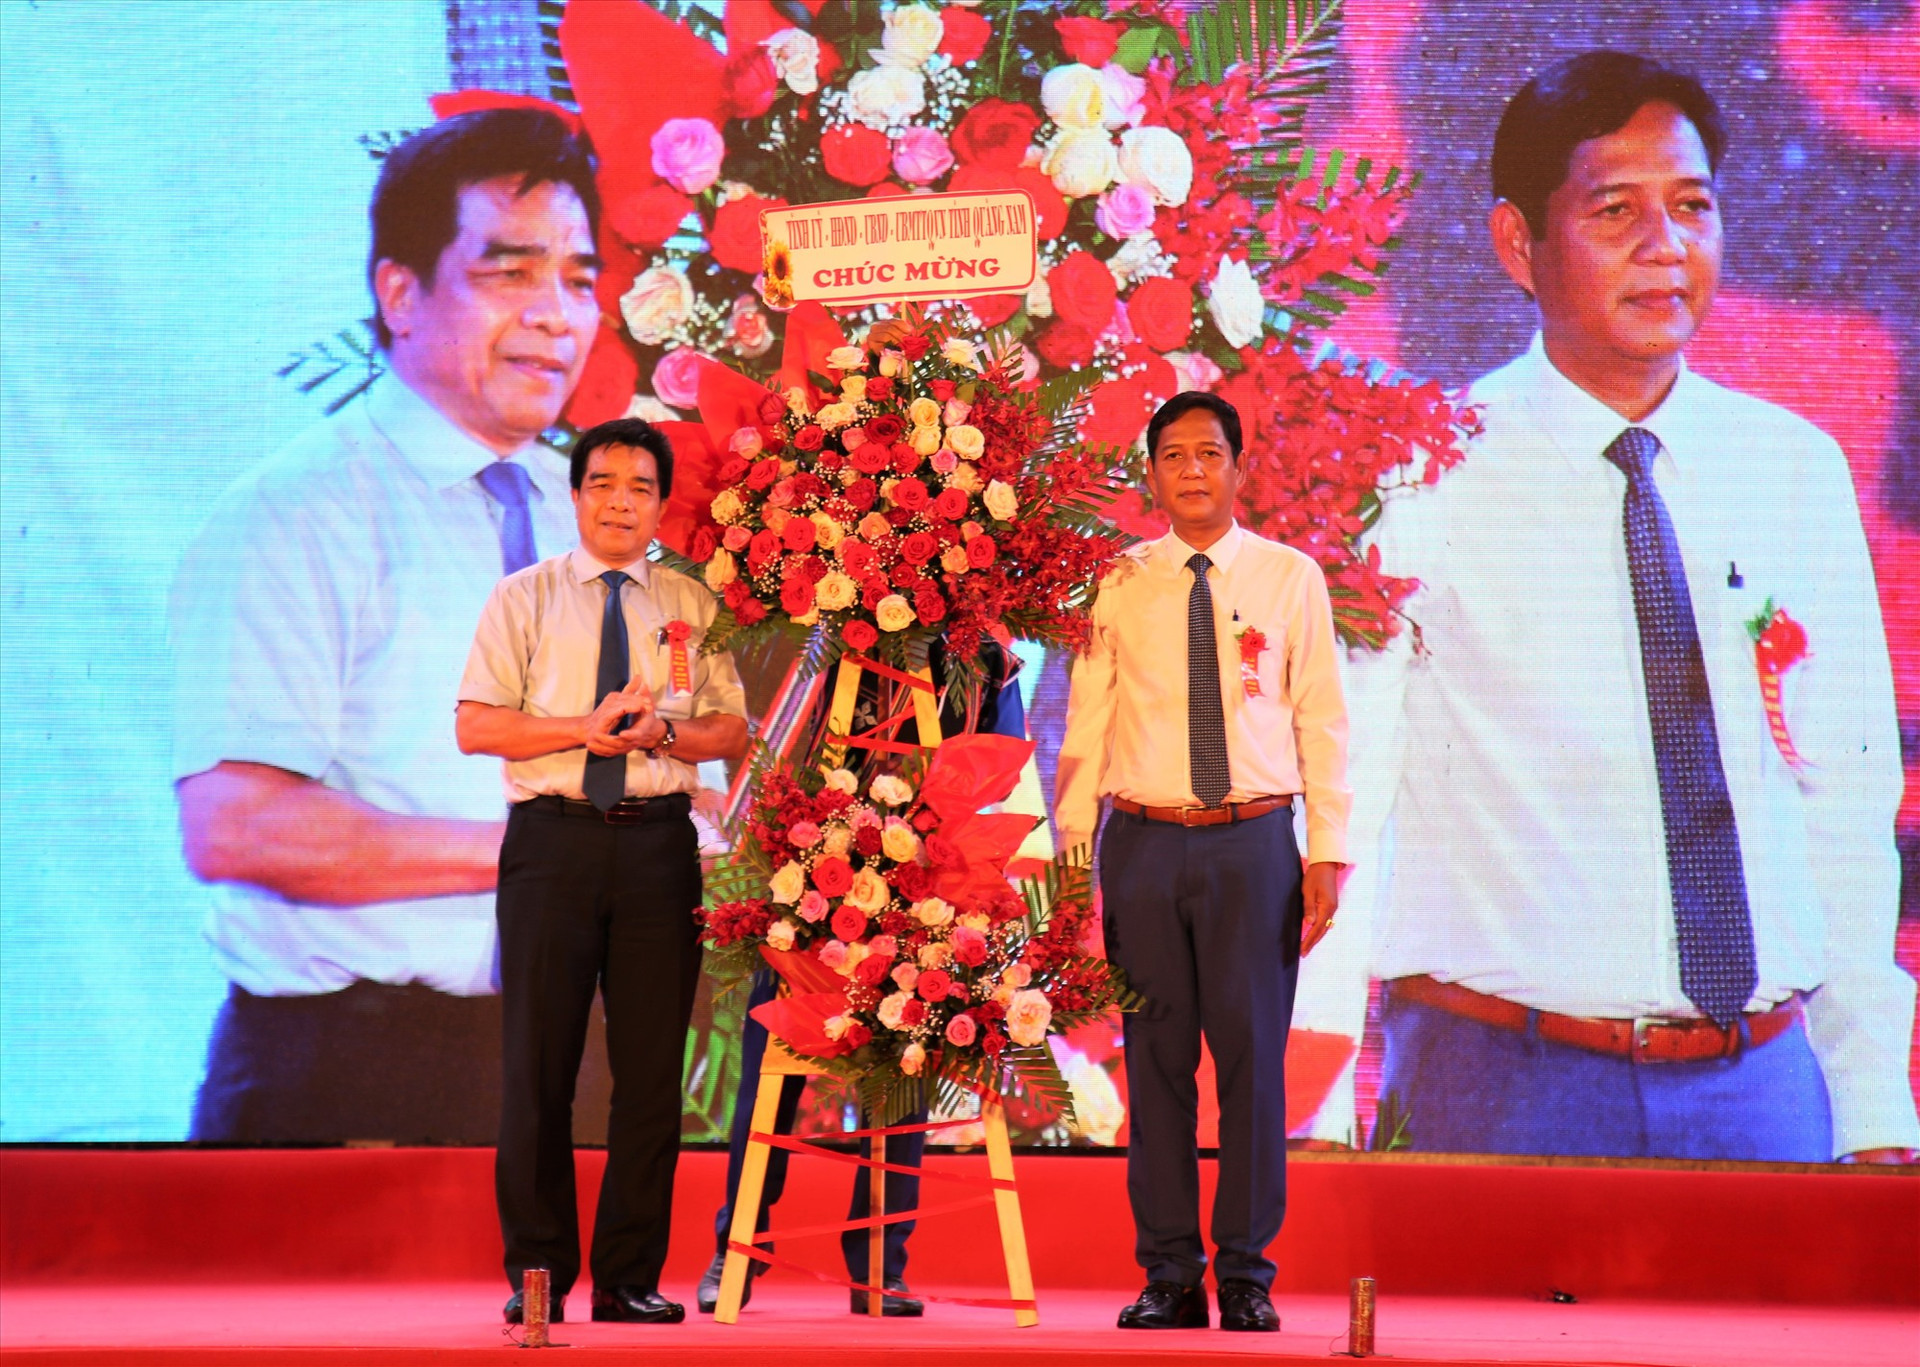 Chủ tịch UBND huyện Nam Giang - A Viết Sơn (bên phải) đón nhận lẵng hoa chúc mừng từ Thường trực Tỉnh ủy. Ảnh: A.N